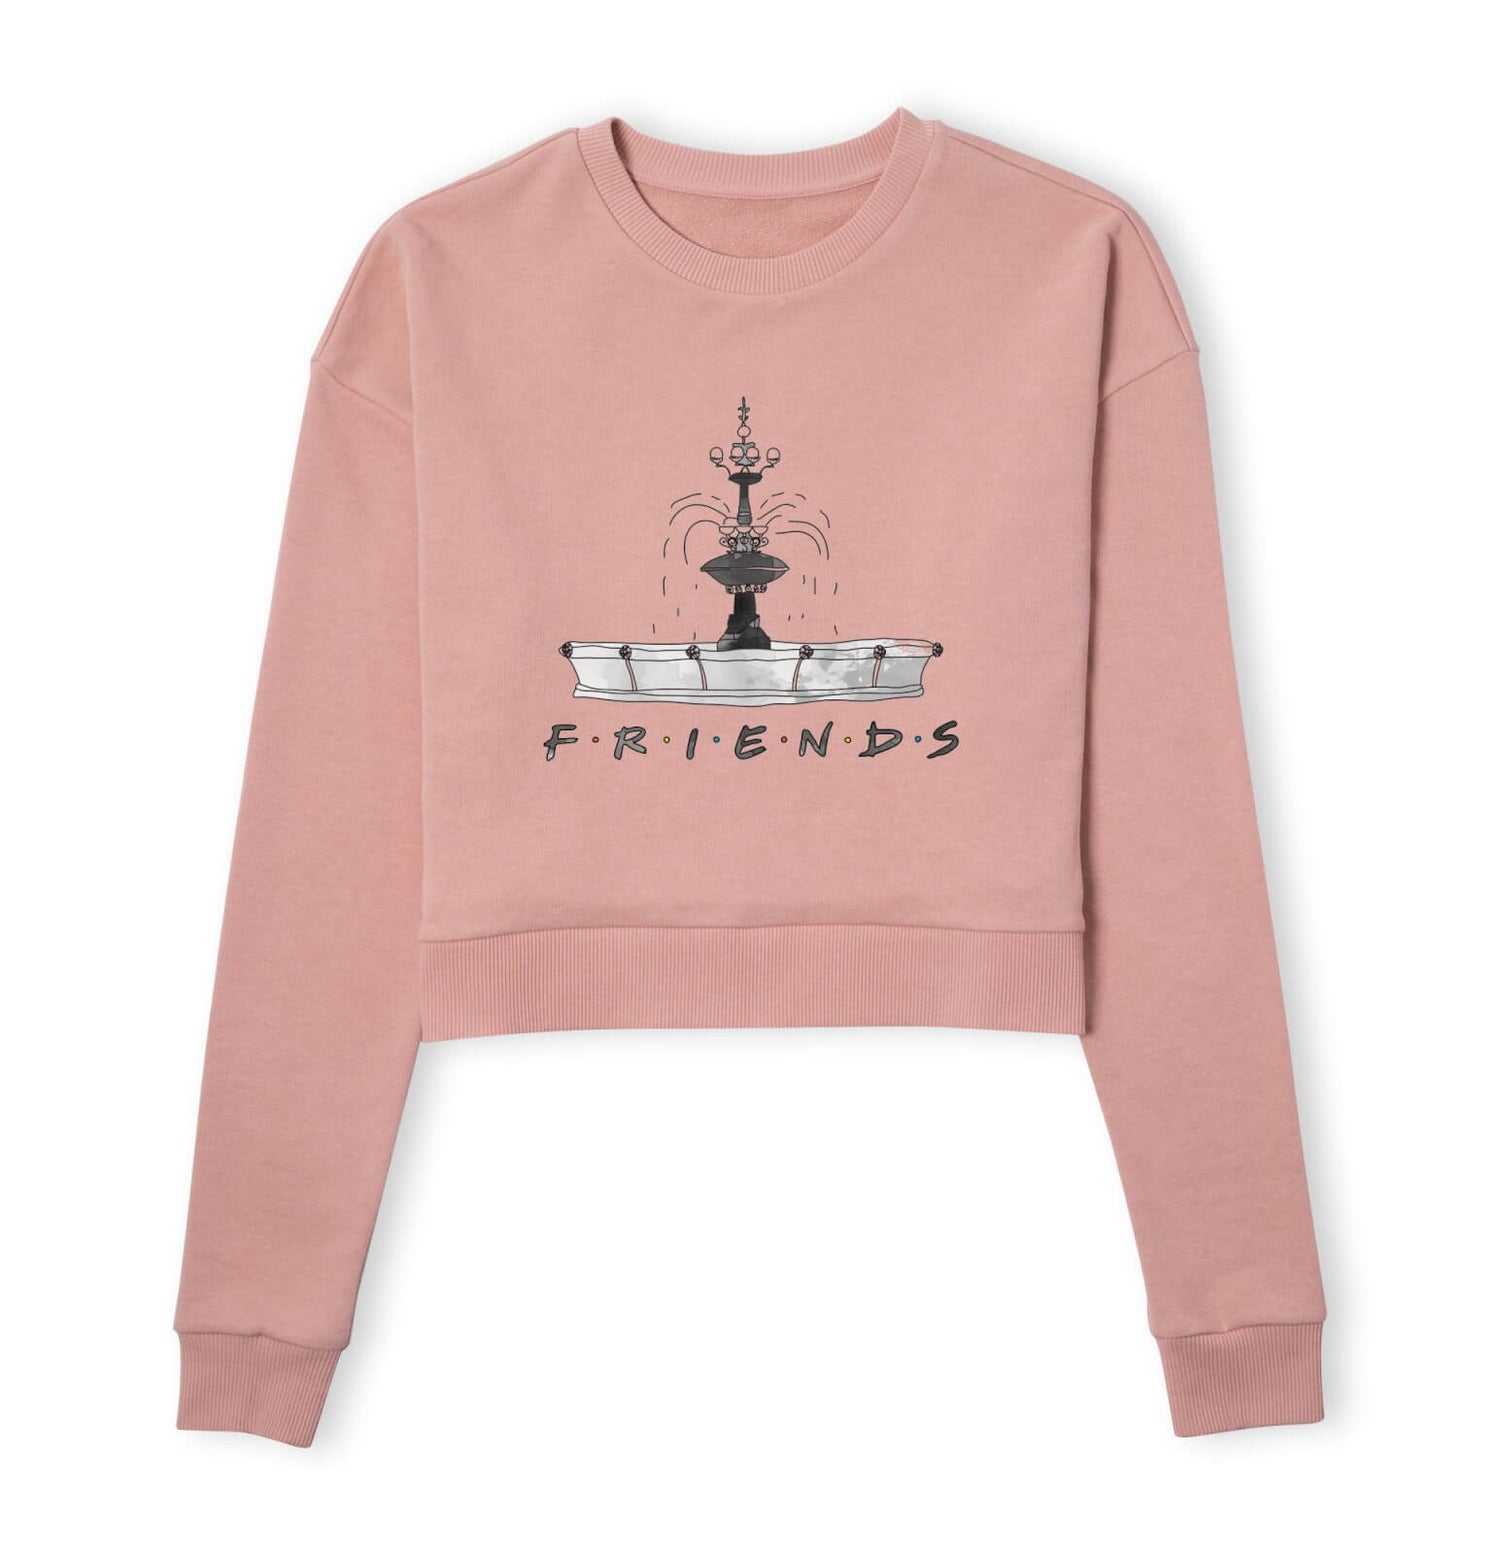 Friends Fountain Sketch Women's Cropped Sweatshirt - Dusty Pink